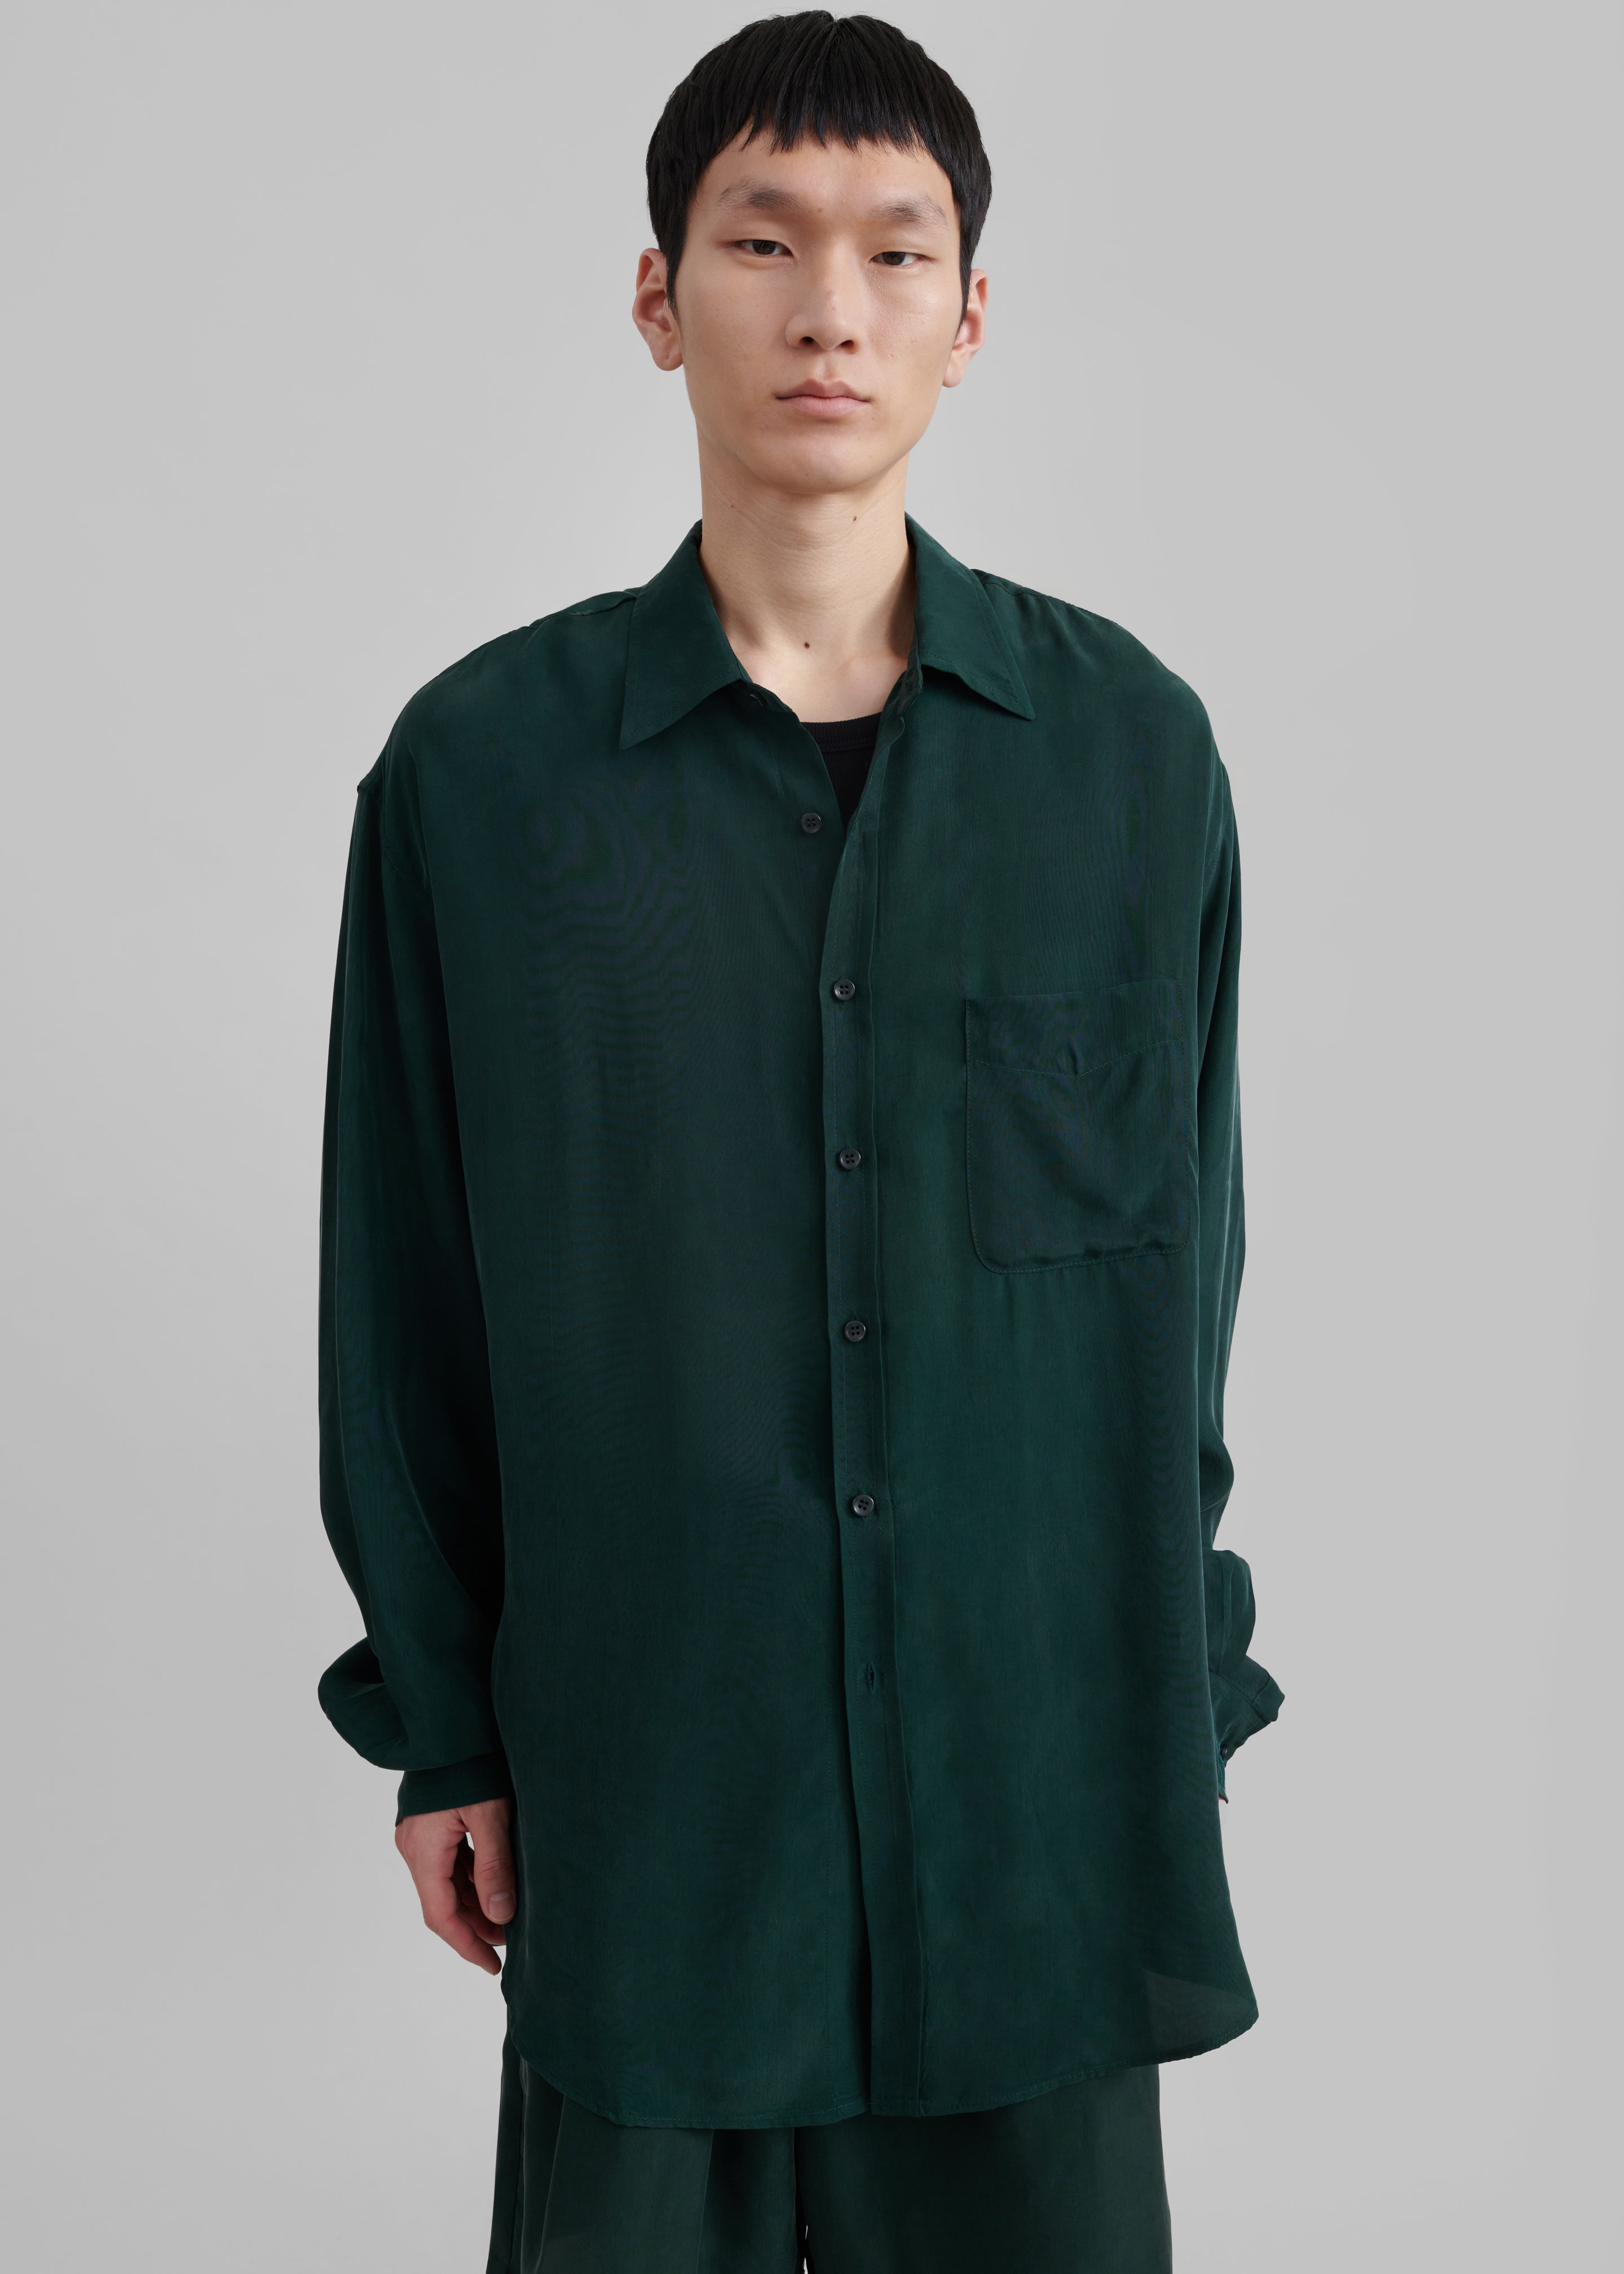 Leland Silky Shirt - Forest Green - 2